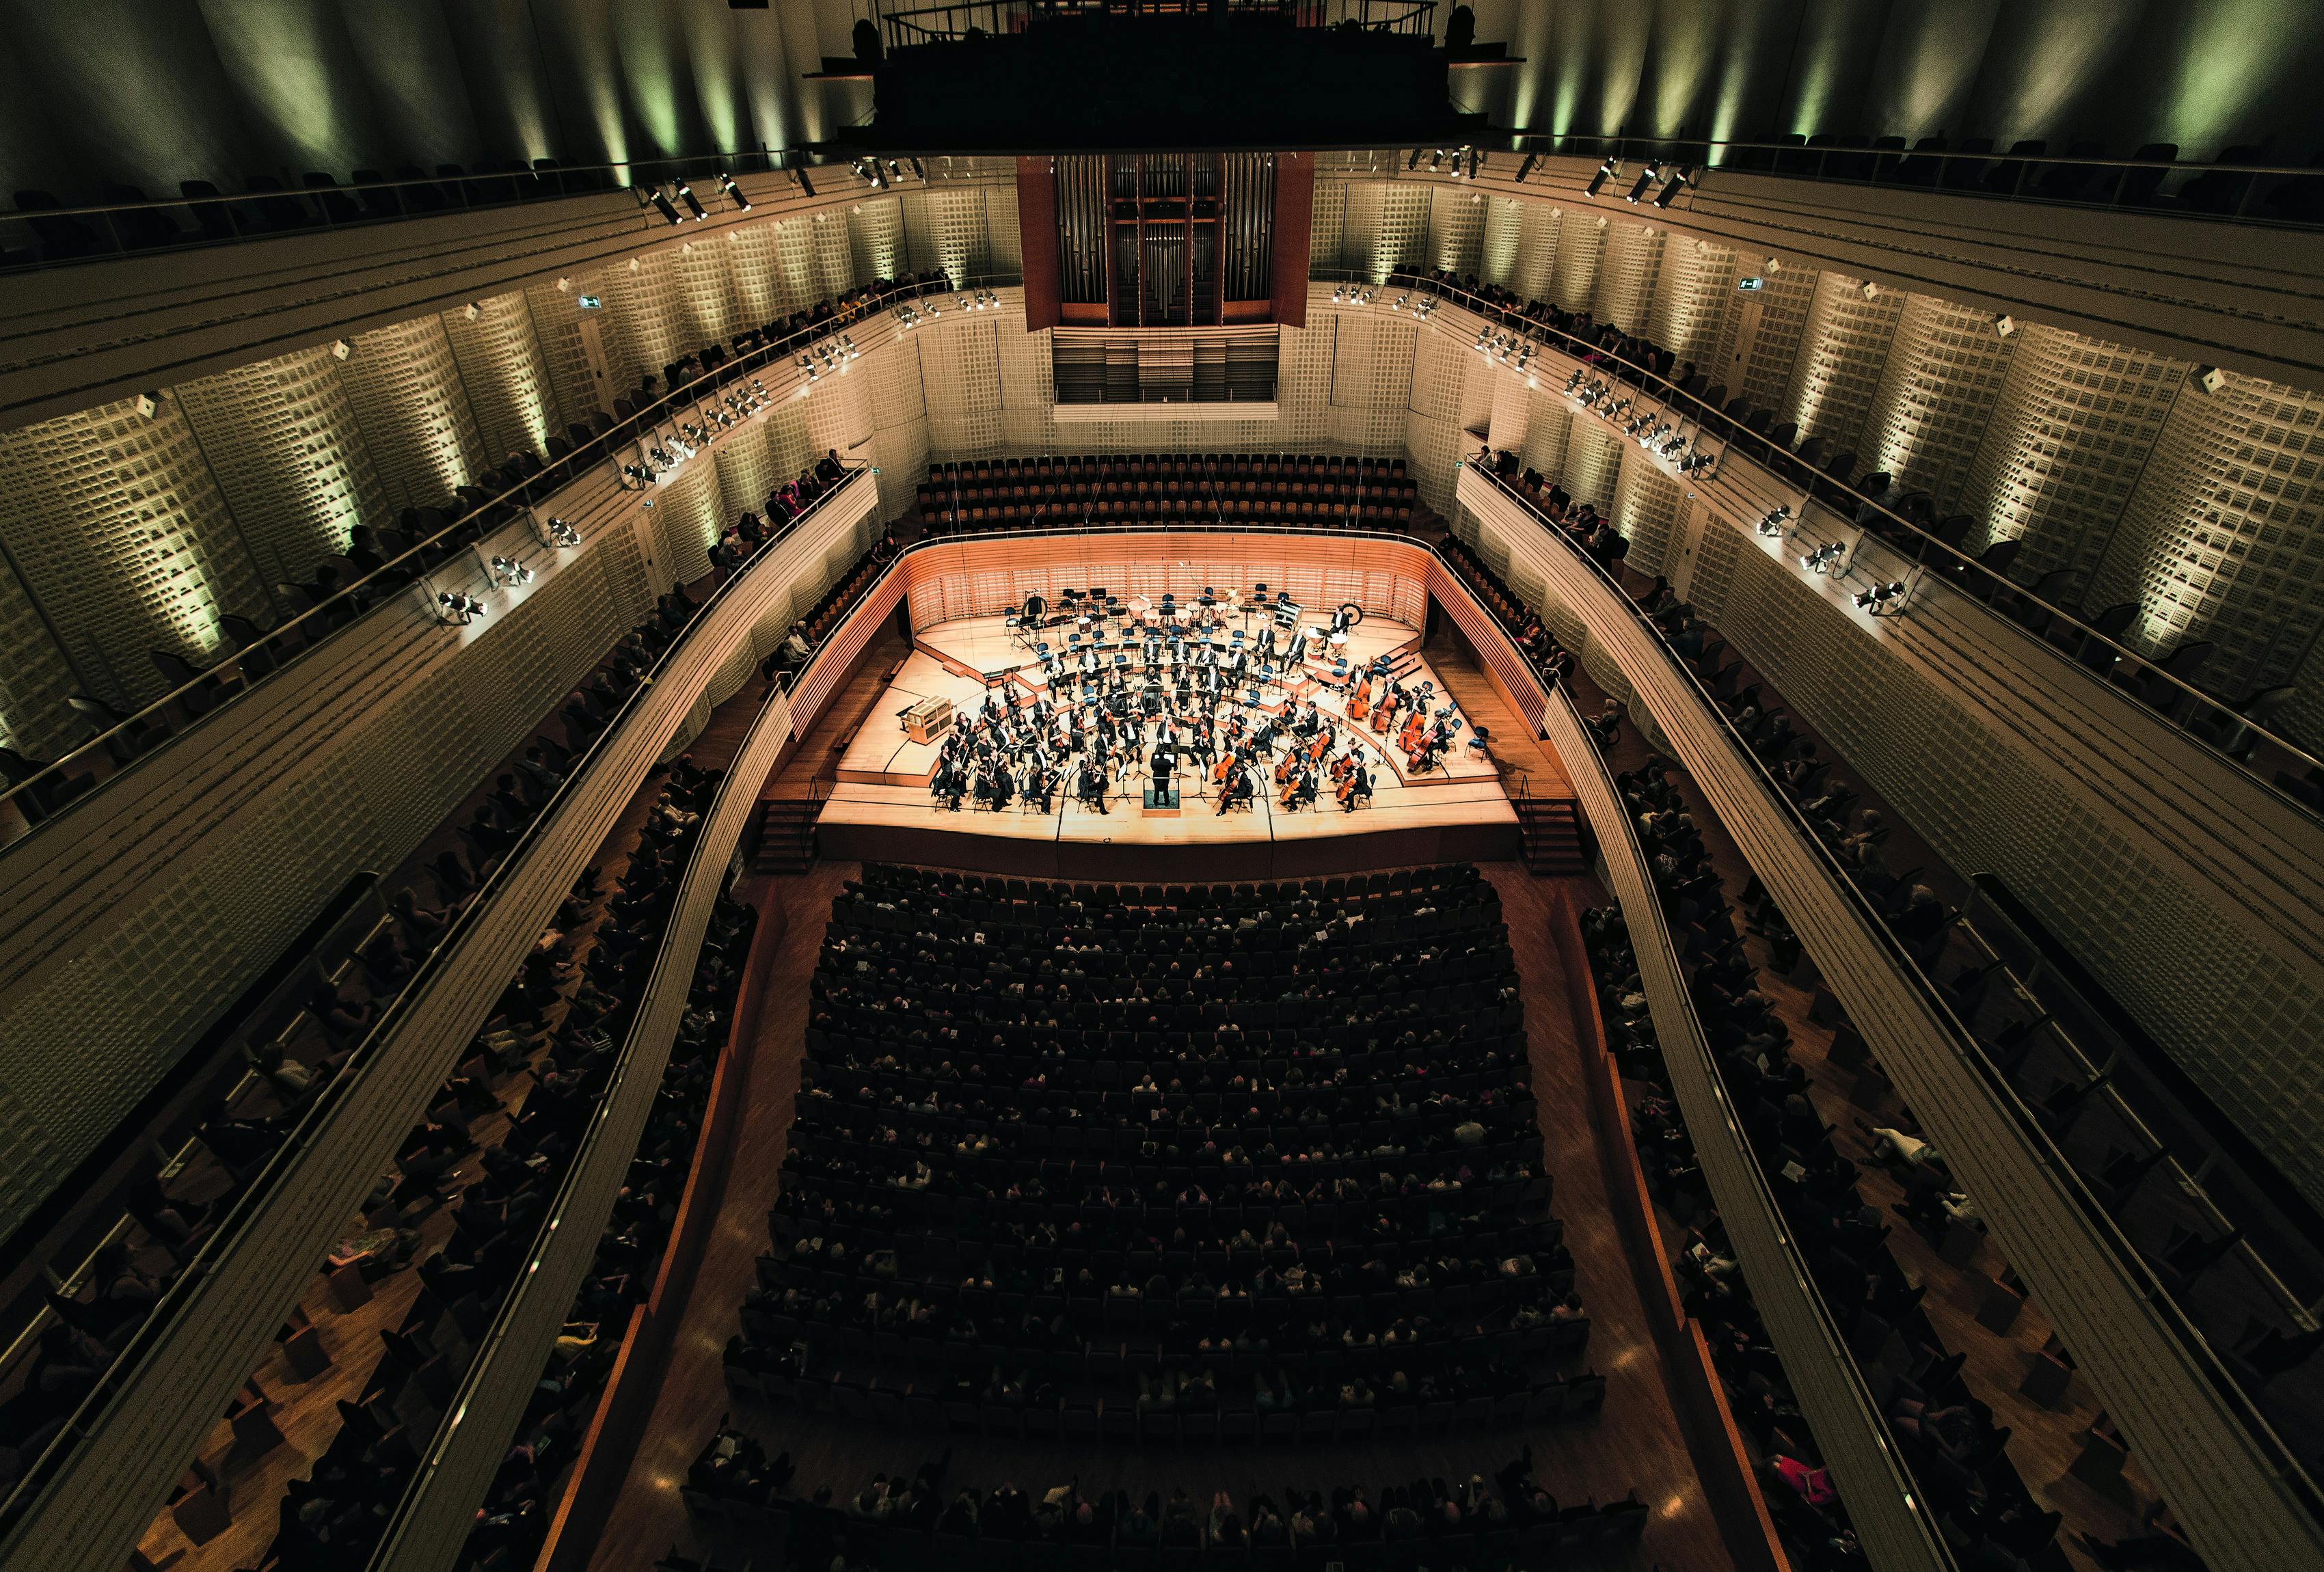 Klassisches Konzert im Konzertsaal des KKL Luzern mit Sicht vom 4. Balkon auf die Bühne.